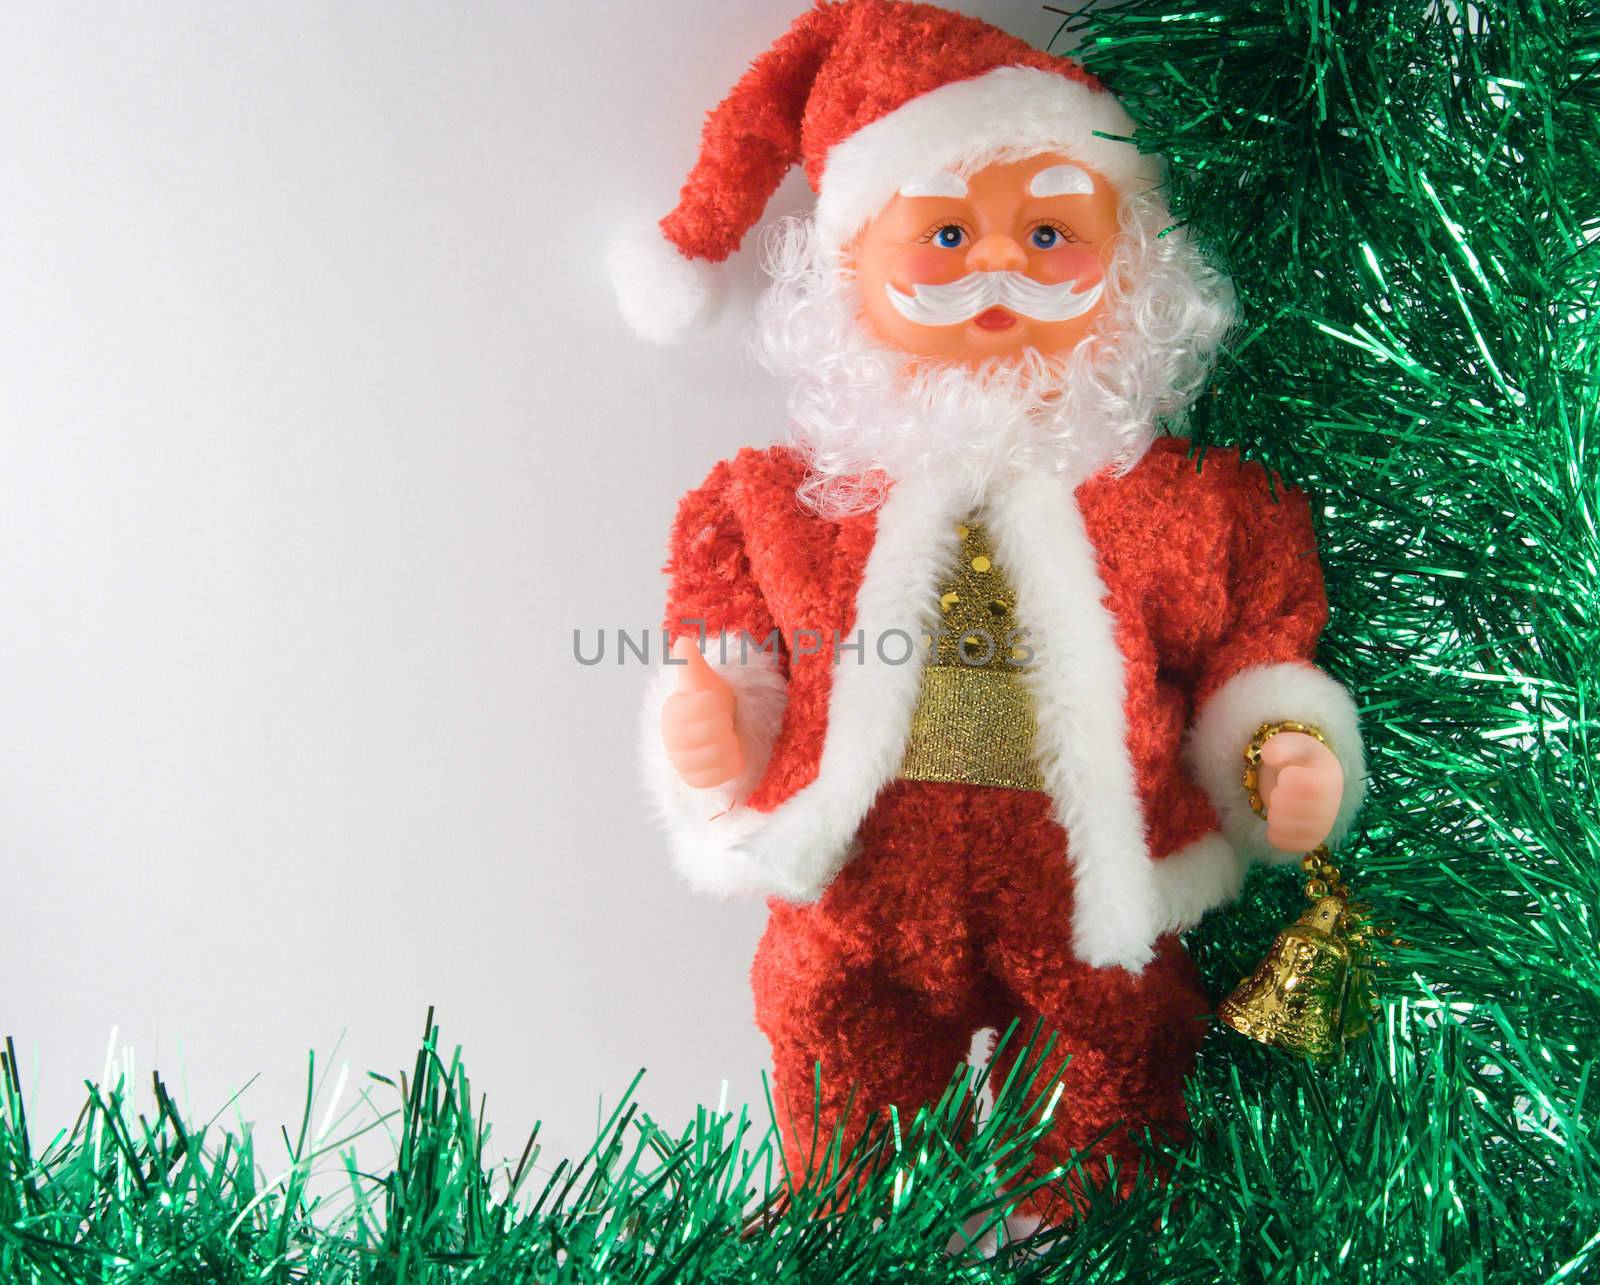 Santa Claus with two handbells